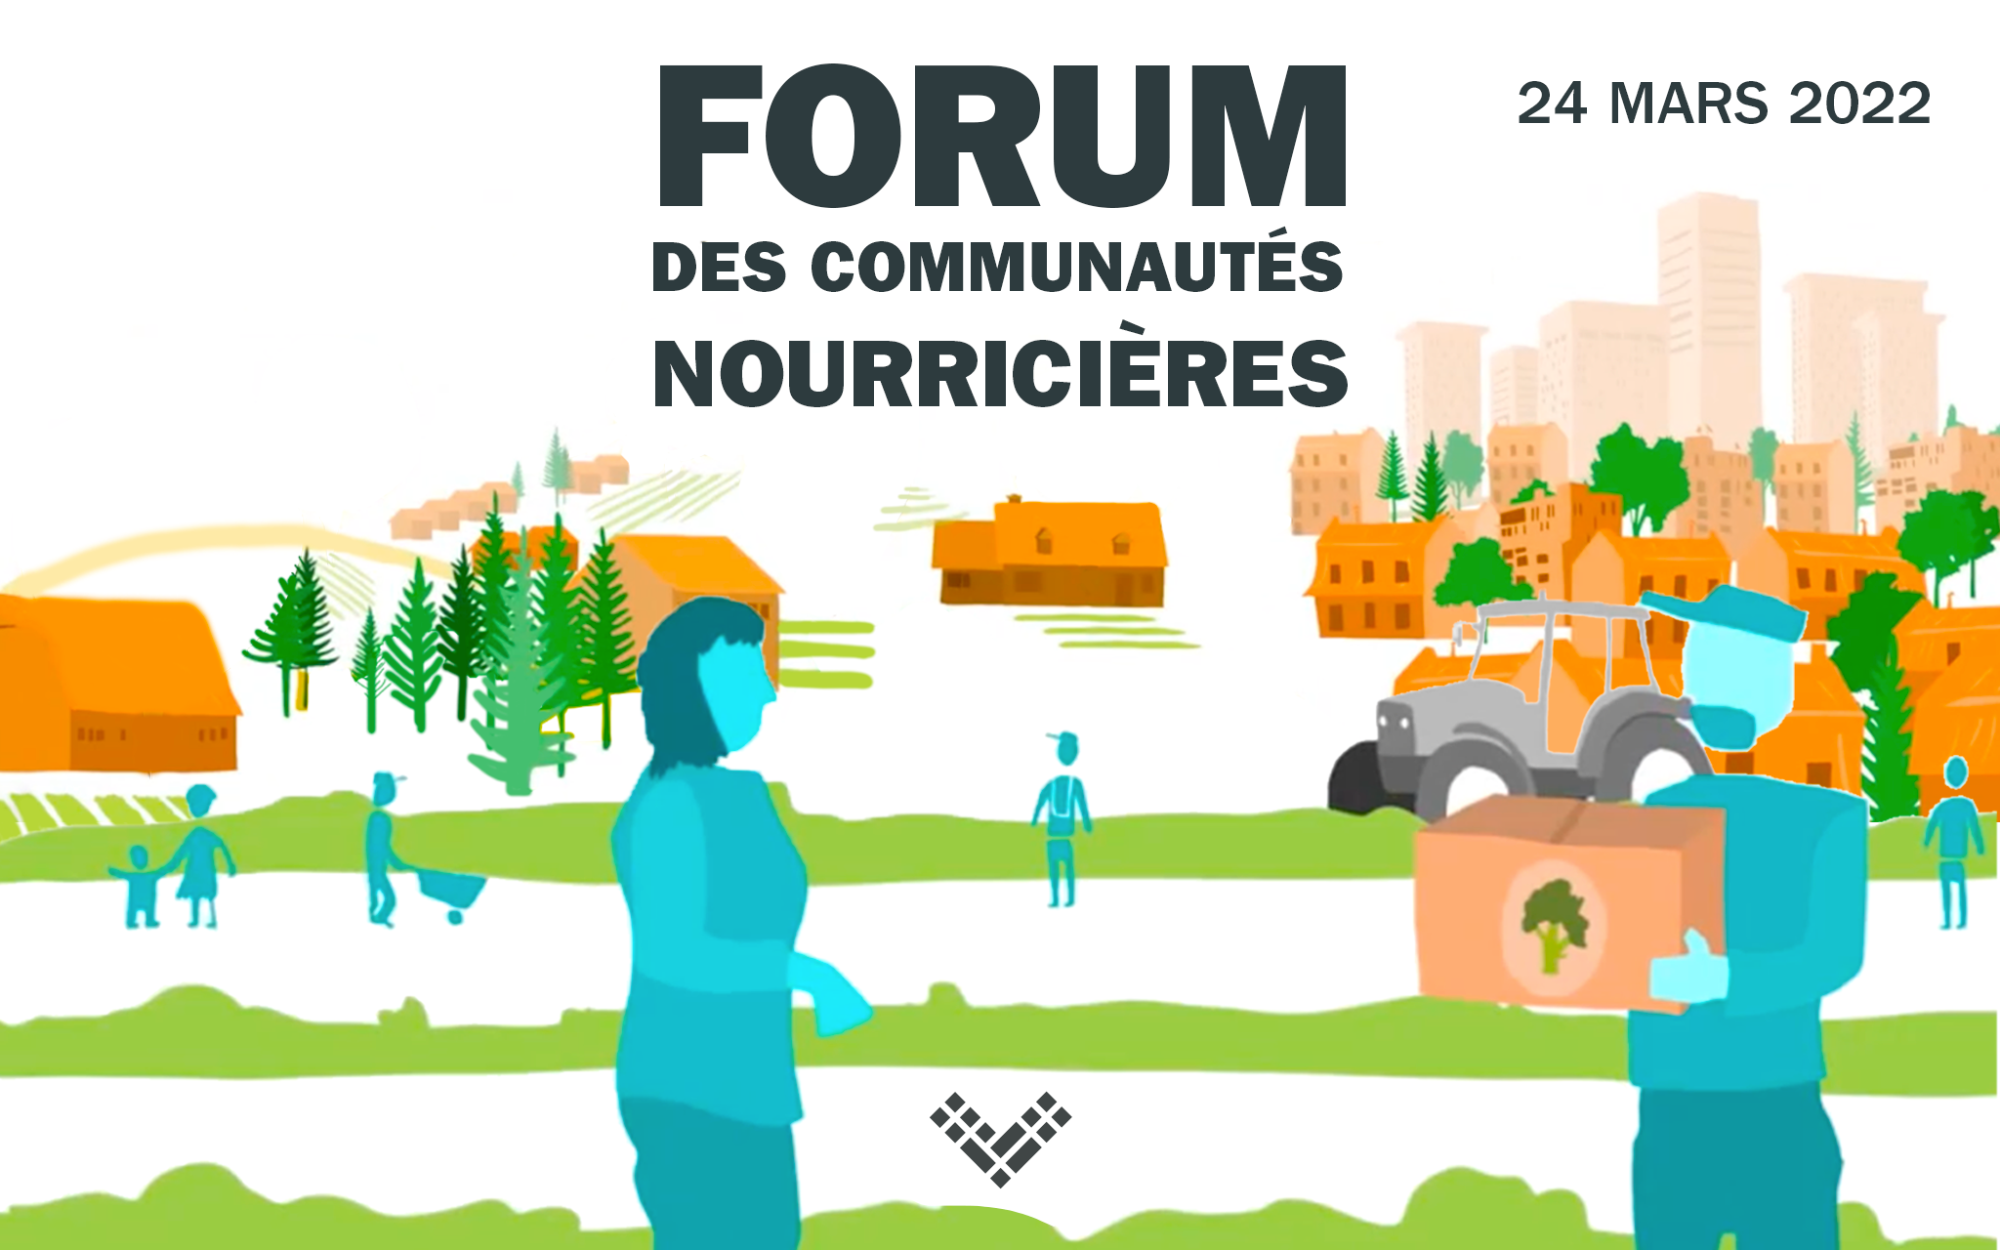 Forum des communautés nourricières: le rôle des municipalités dans les systèmes alimentaires territoriaux